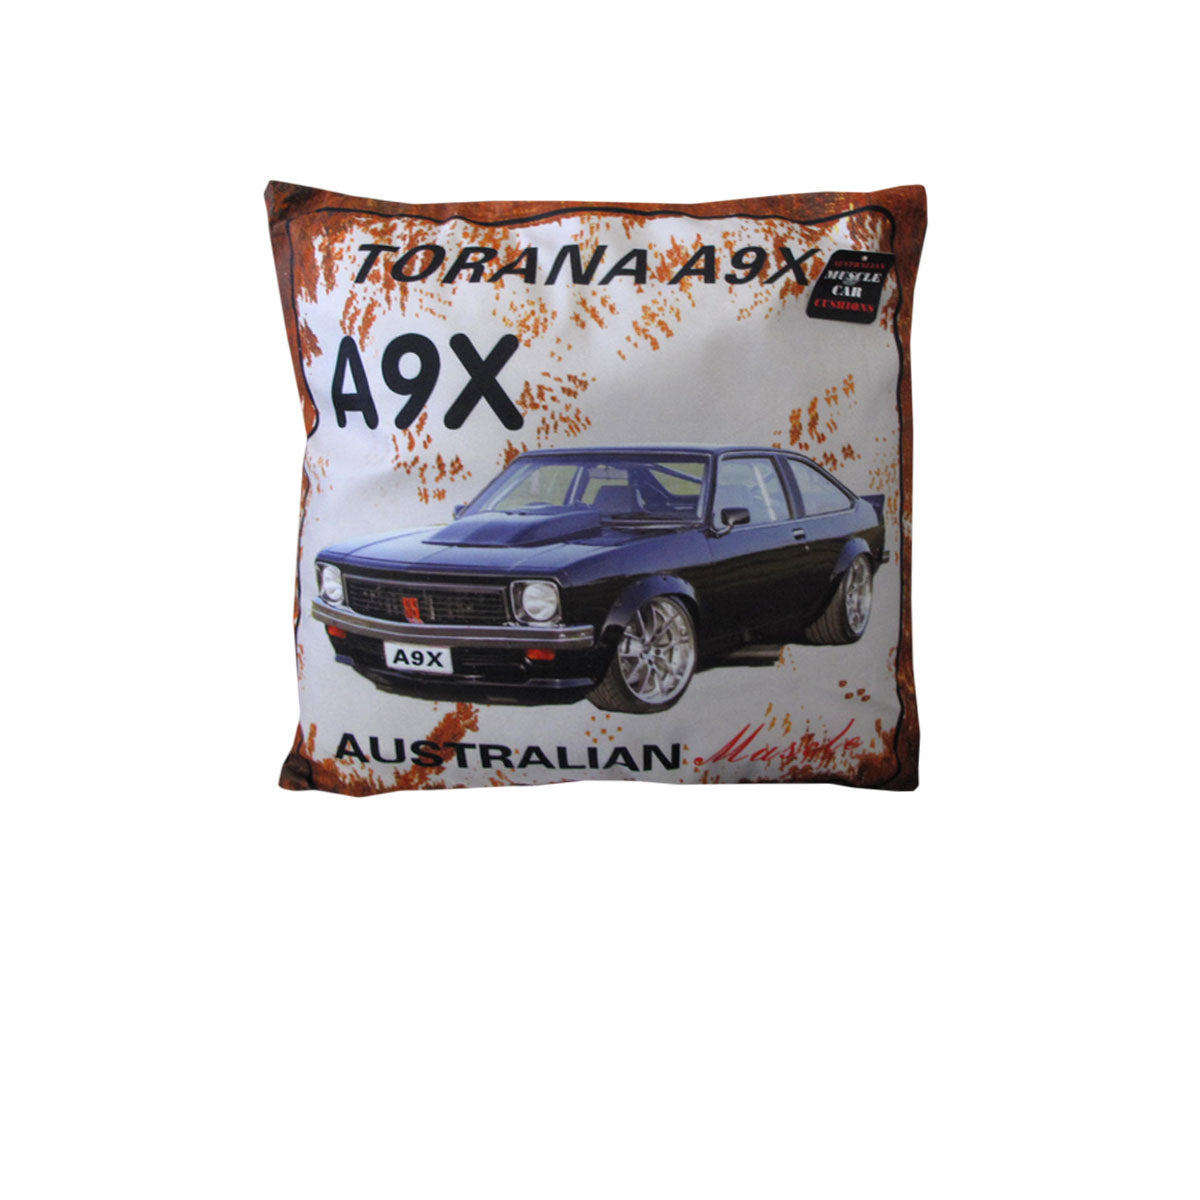 Australian Muscle Car Cushion A9X Torana Blue